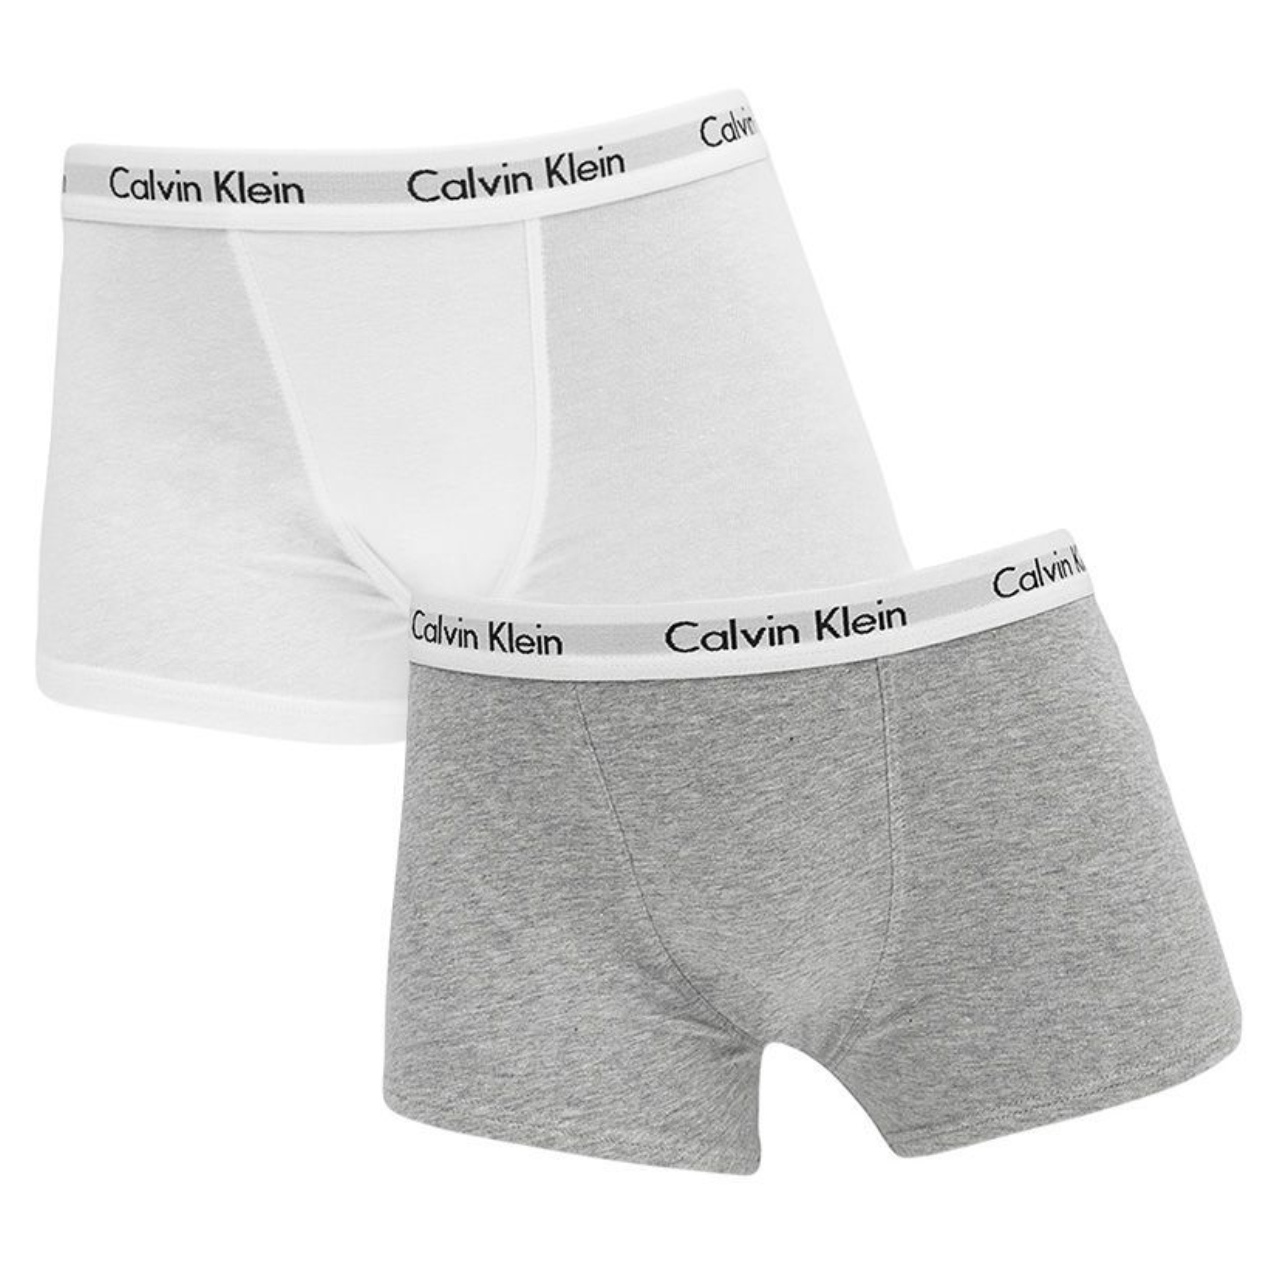 Doe herleven Op en neer gaan Elk jaar Calvin Klein Boys B70B792000926 Grijs - Ondergoed & Nachtkleding - Jongens  - Irma Mode